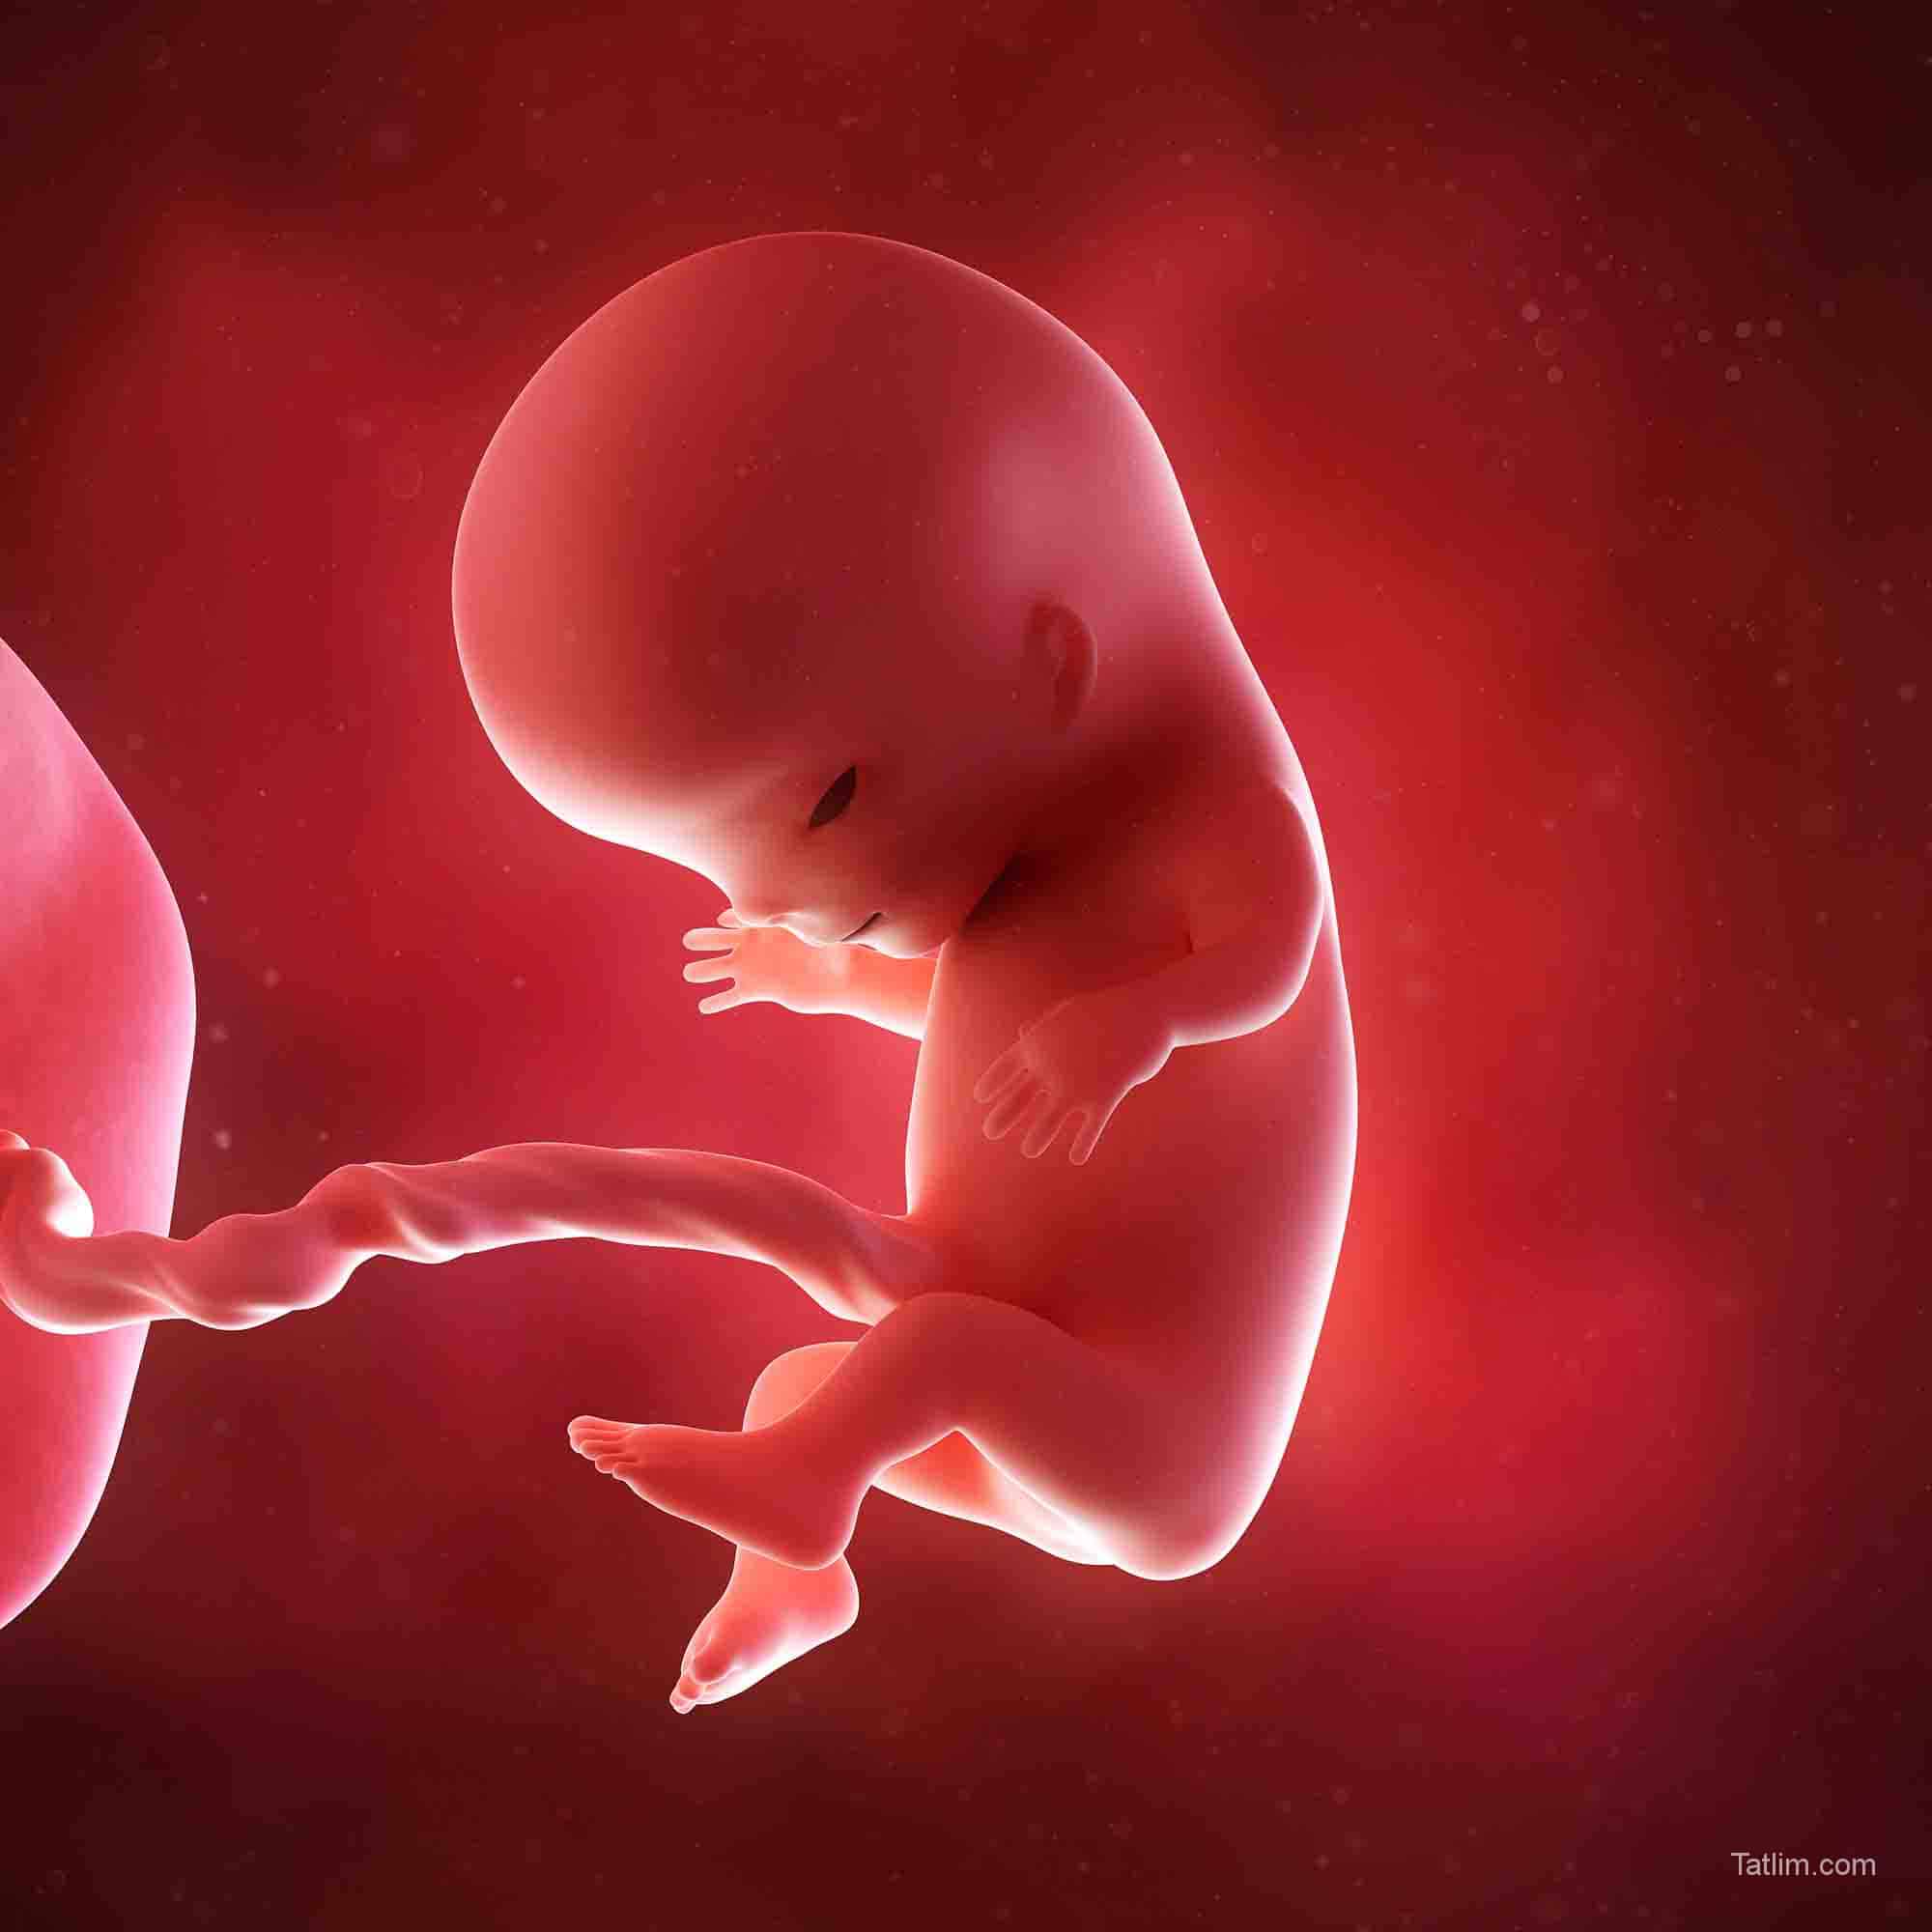 13 акушерская неделя. Эмбрион на 11 неделе беременности. Ребёнок 11 недель беременности эмбрион. Плод на 11 акушерской неделе беременности. Плод на 11-12 неделе беременности.